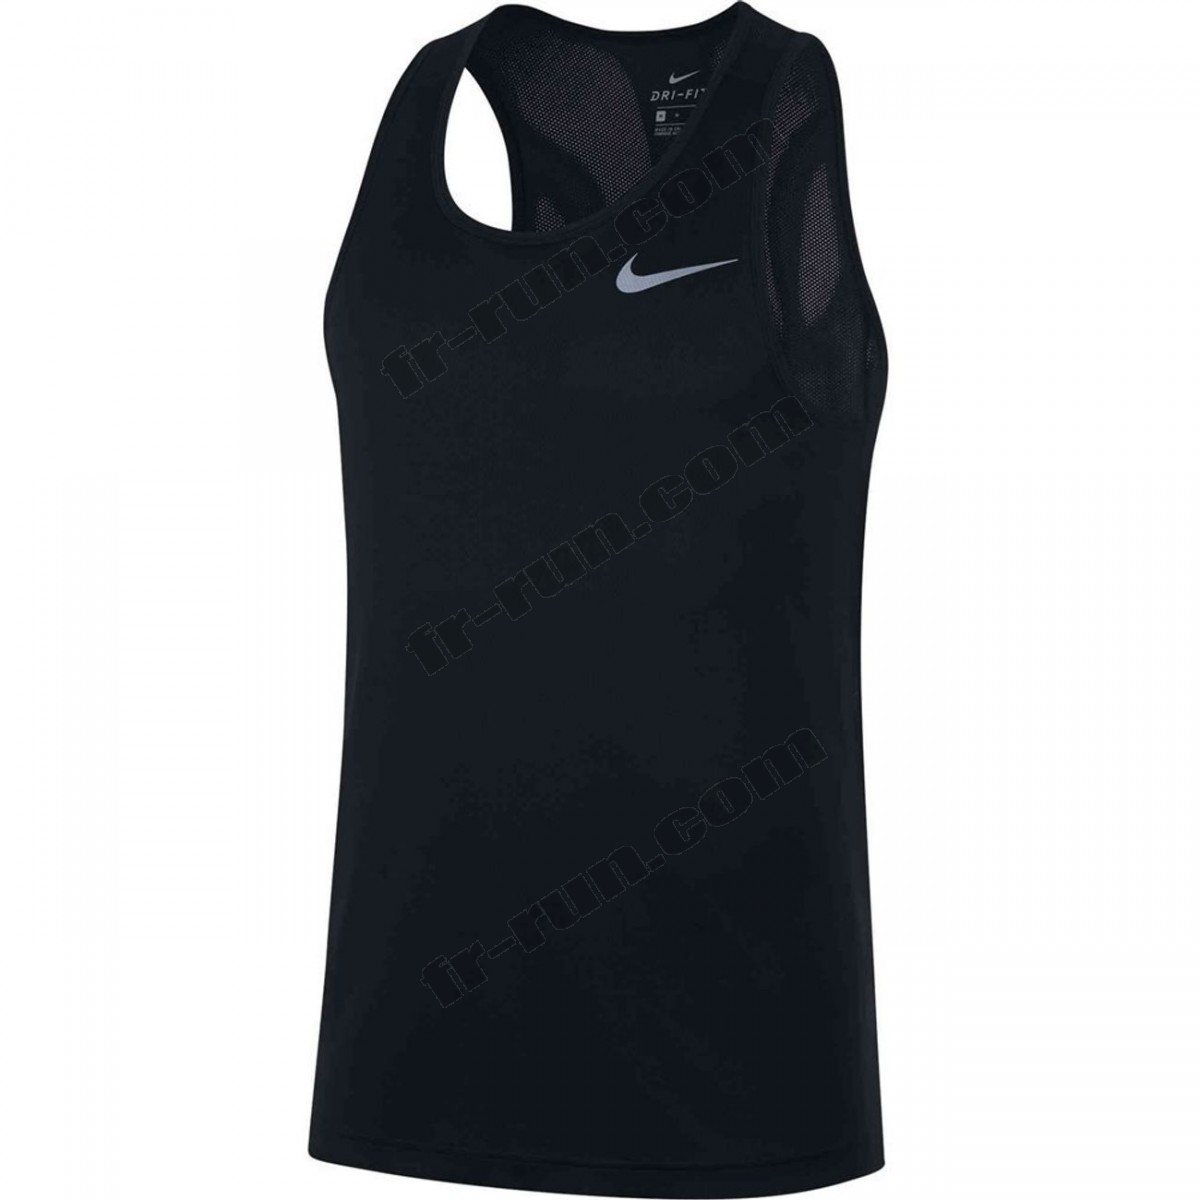 Nike/running homme NIKE Nike Top Run ◇◇◇ Pas Cher Du Tout - Nike/running homme NIKE Nike Top Run ◇◇◇ Pas Cher Du Tout